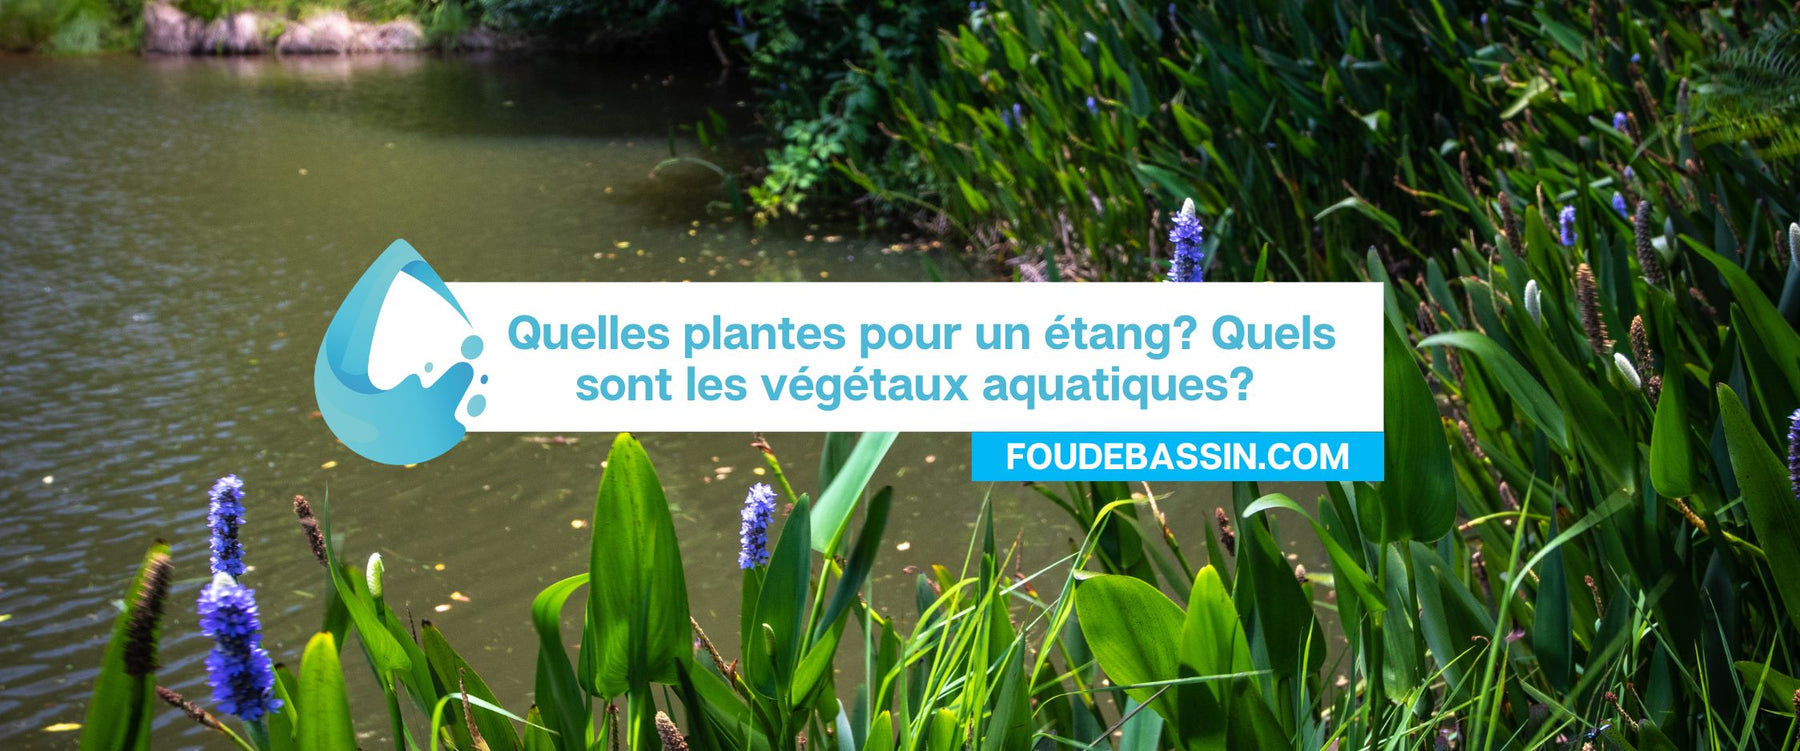 Quelles plantes pour un étang? Quels sont les végétaux aquatiques?